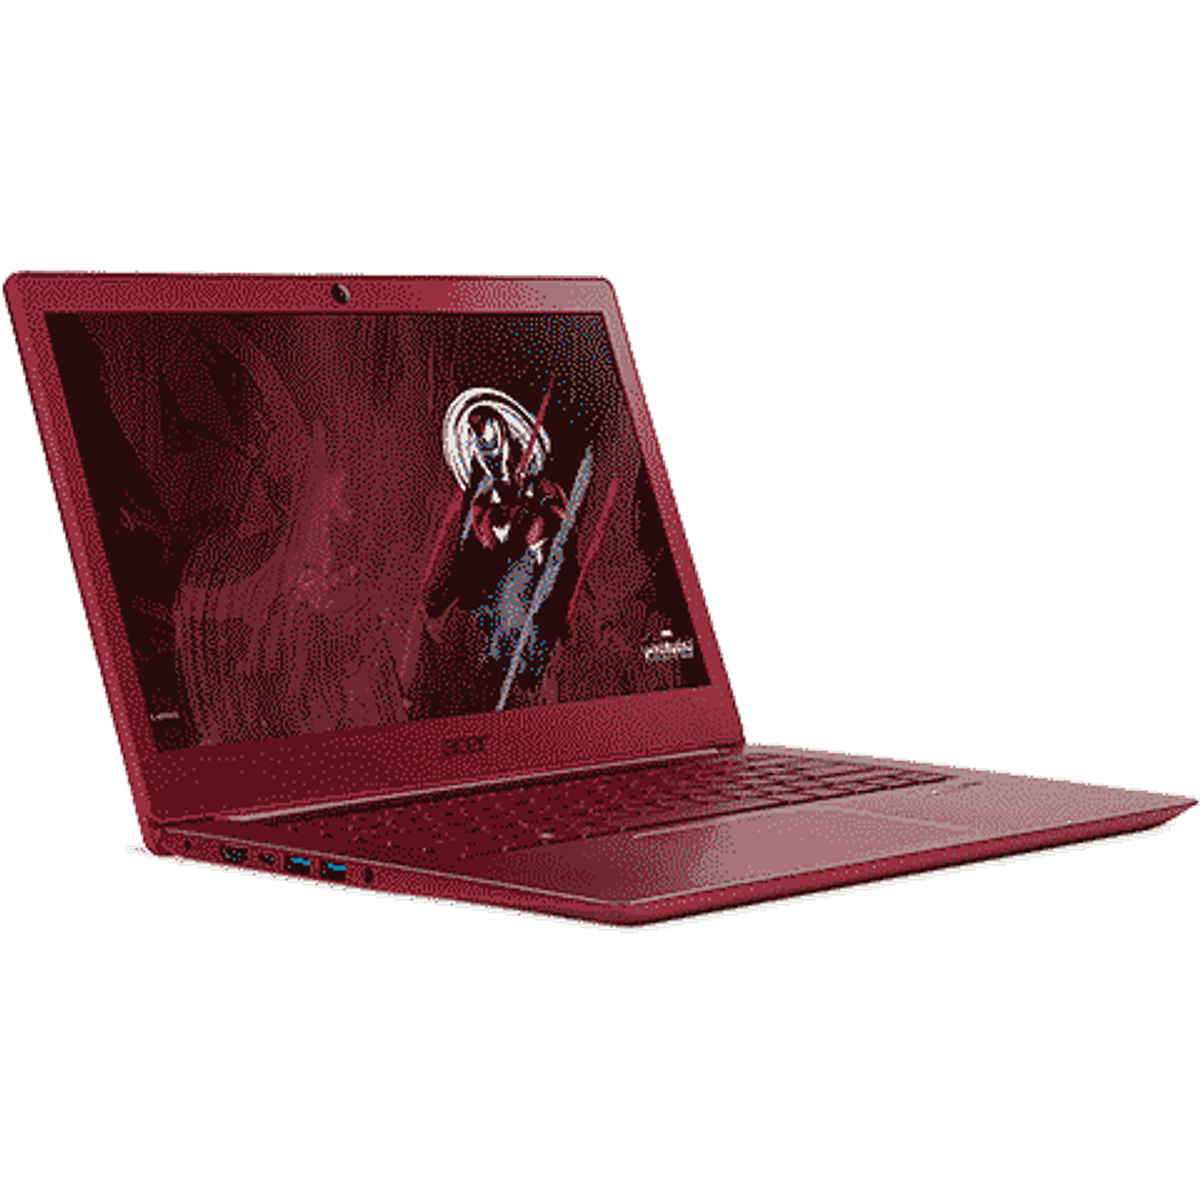 Acer Swift 3 Iron Man Edition: Laptop Keren dengan Desain Superhero